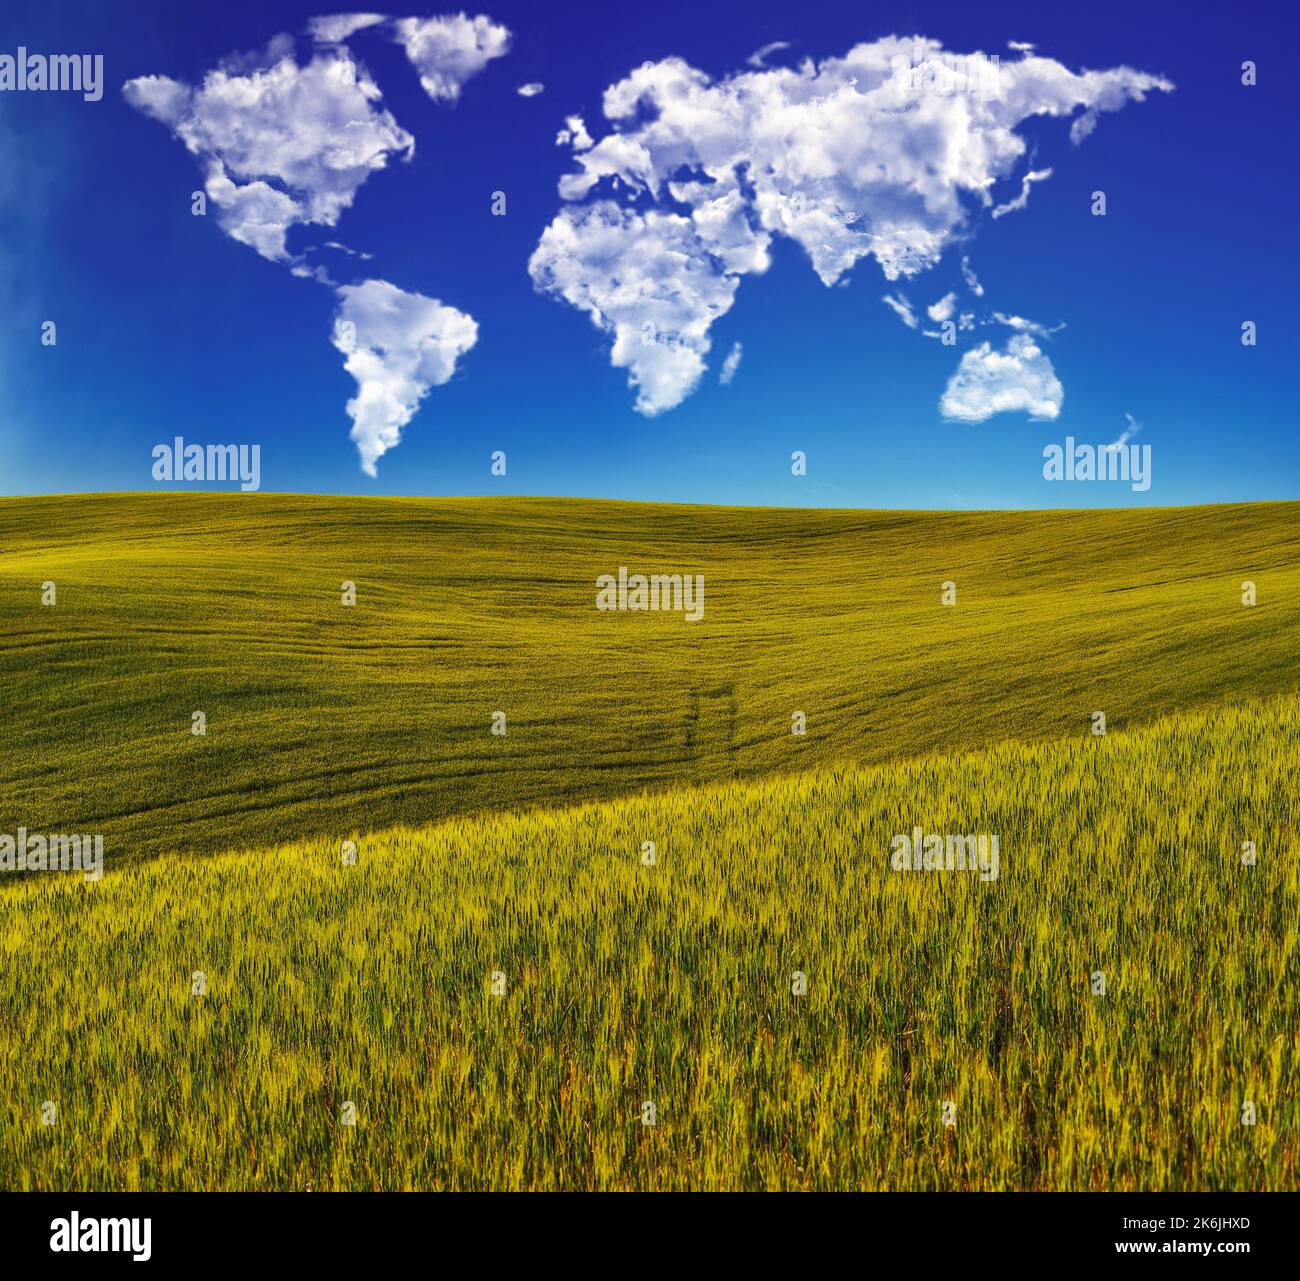 nuages sous la forme d'une carte du monde sur un champ vert. paysage conceptuel. champ vallonné Banque D'Images